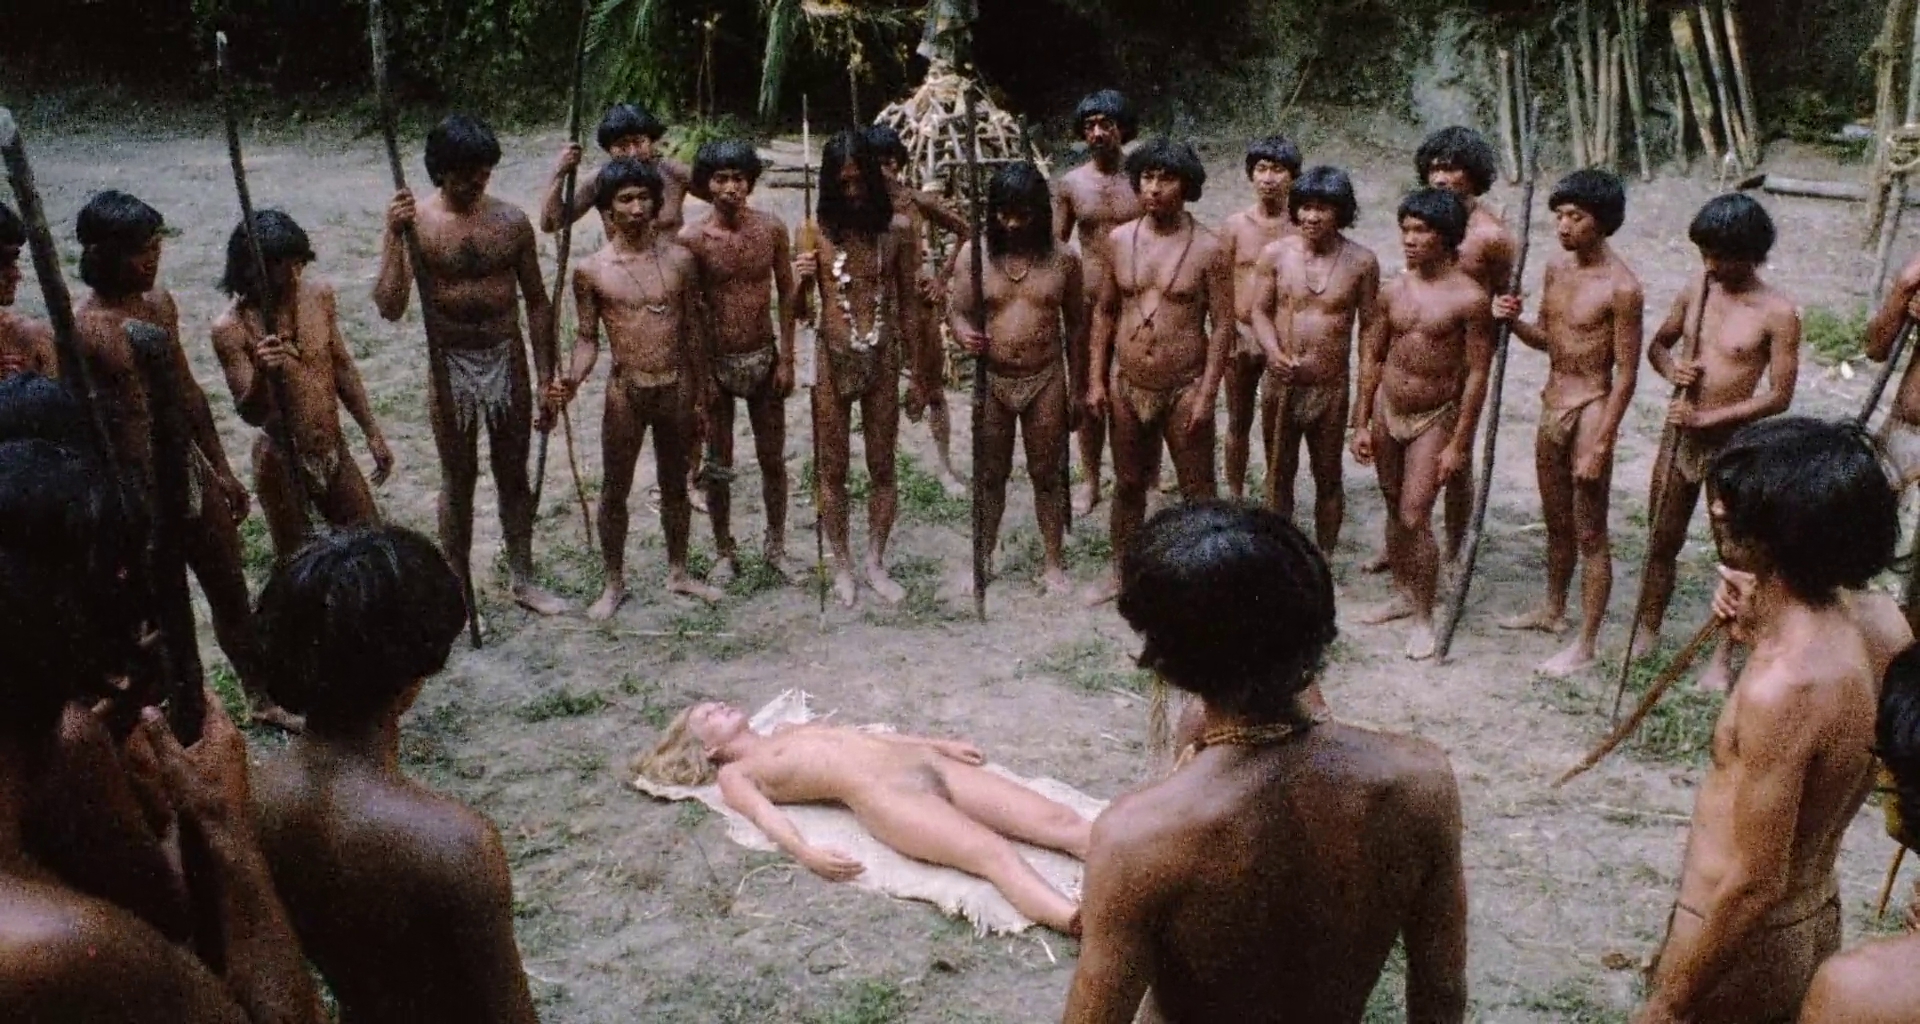 смотреть фильмы онлайн эротику амазонки фото 91